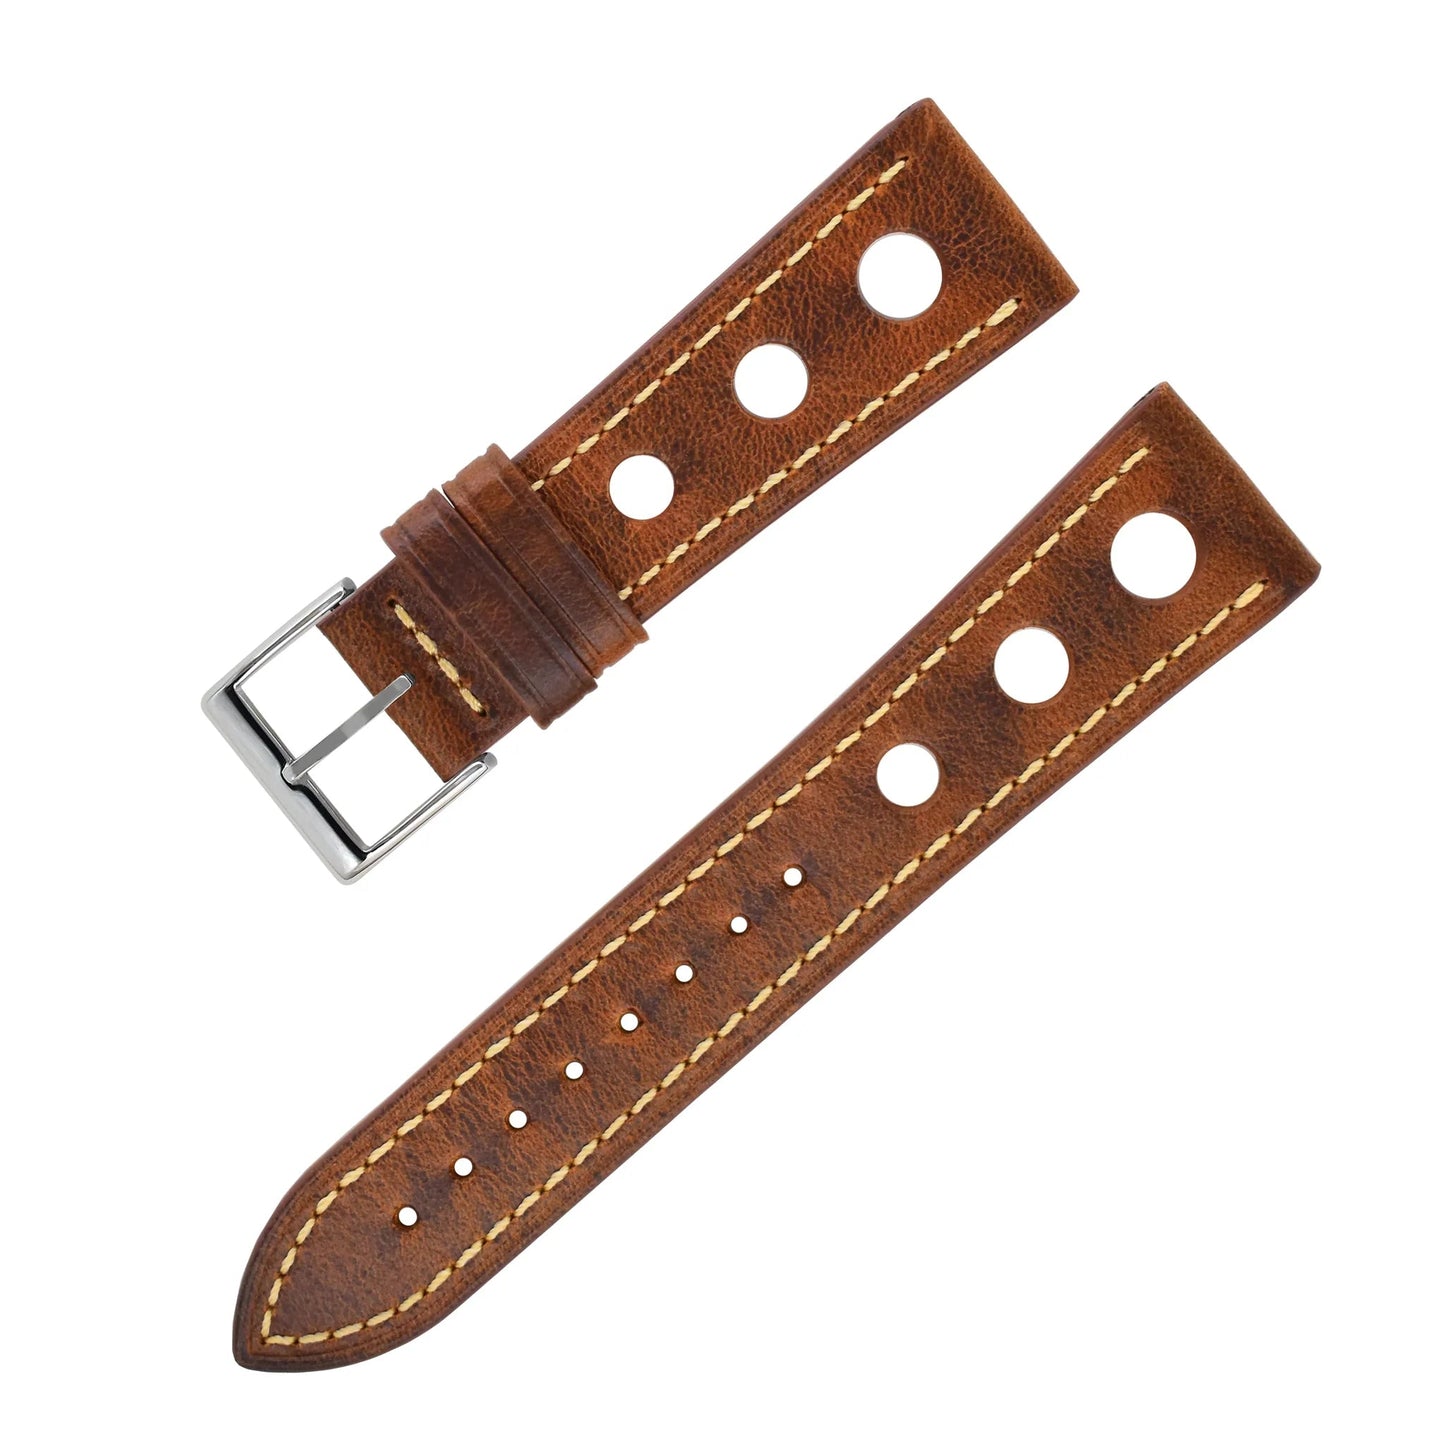 Bracelet montre cuir Racer - MONTRE A PAPY - Montre automatique seiko mod 18mmYellow brown